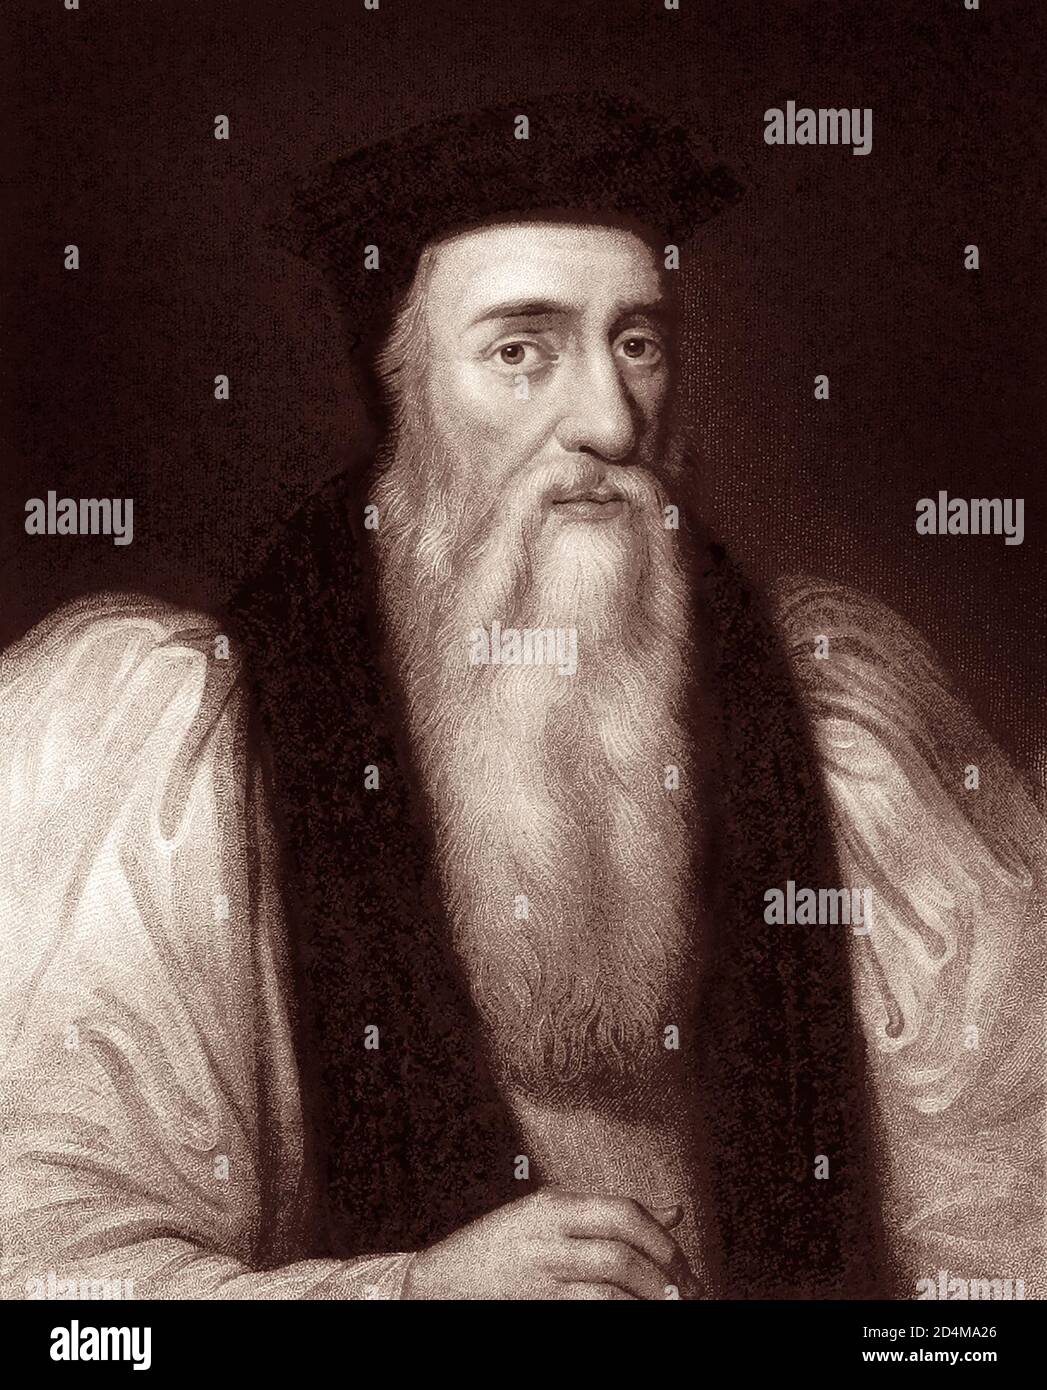 Thomas Cranmer (1489–1556) fu un capo della riforma inglese e arcivescovo di Canterbury durante i regni di Enrico VIII, Edoardo VI e, per un breve periodo, Maria I. sotto il regno di Maria i, un cattolico romano, Cranmer fu accusato di tradimento e eresia e fu sutilmente bruciato al palo il 21 marzo 1566. Foto Stock